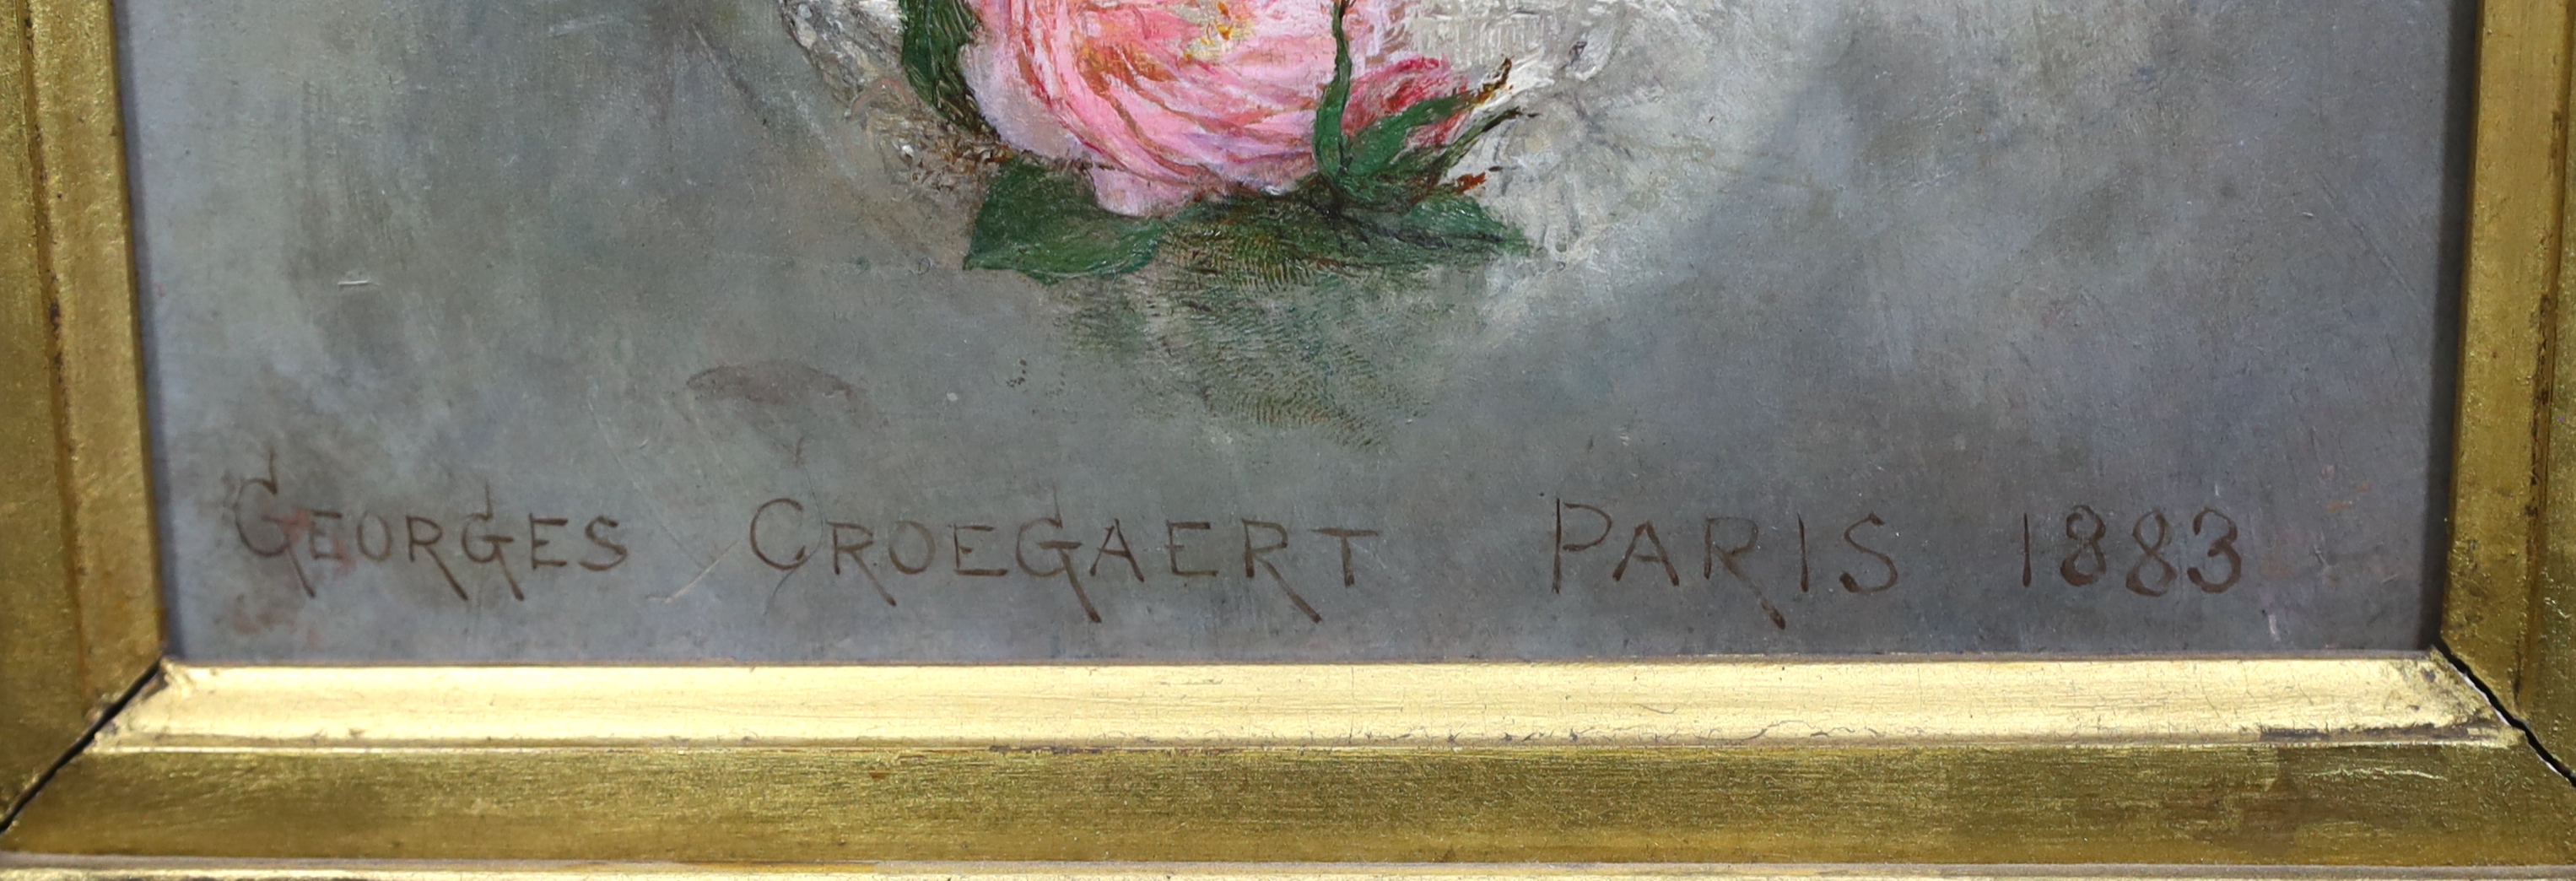 Georges Croegaert (Belgian, 1848-1923), A Beauty, Paris 1883, oil on panel, 23 x 17cm